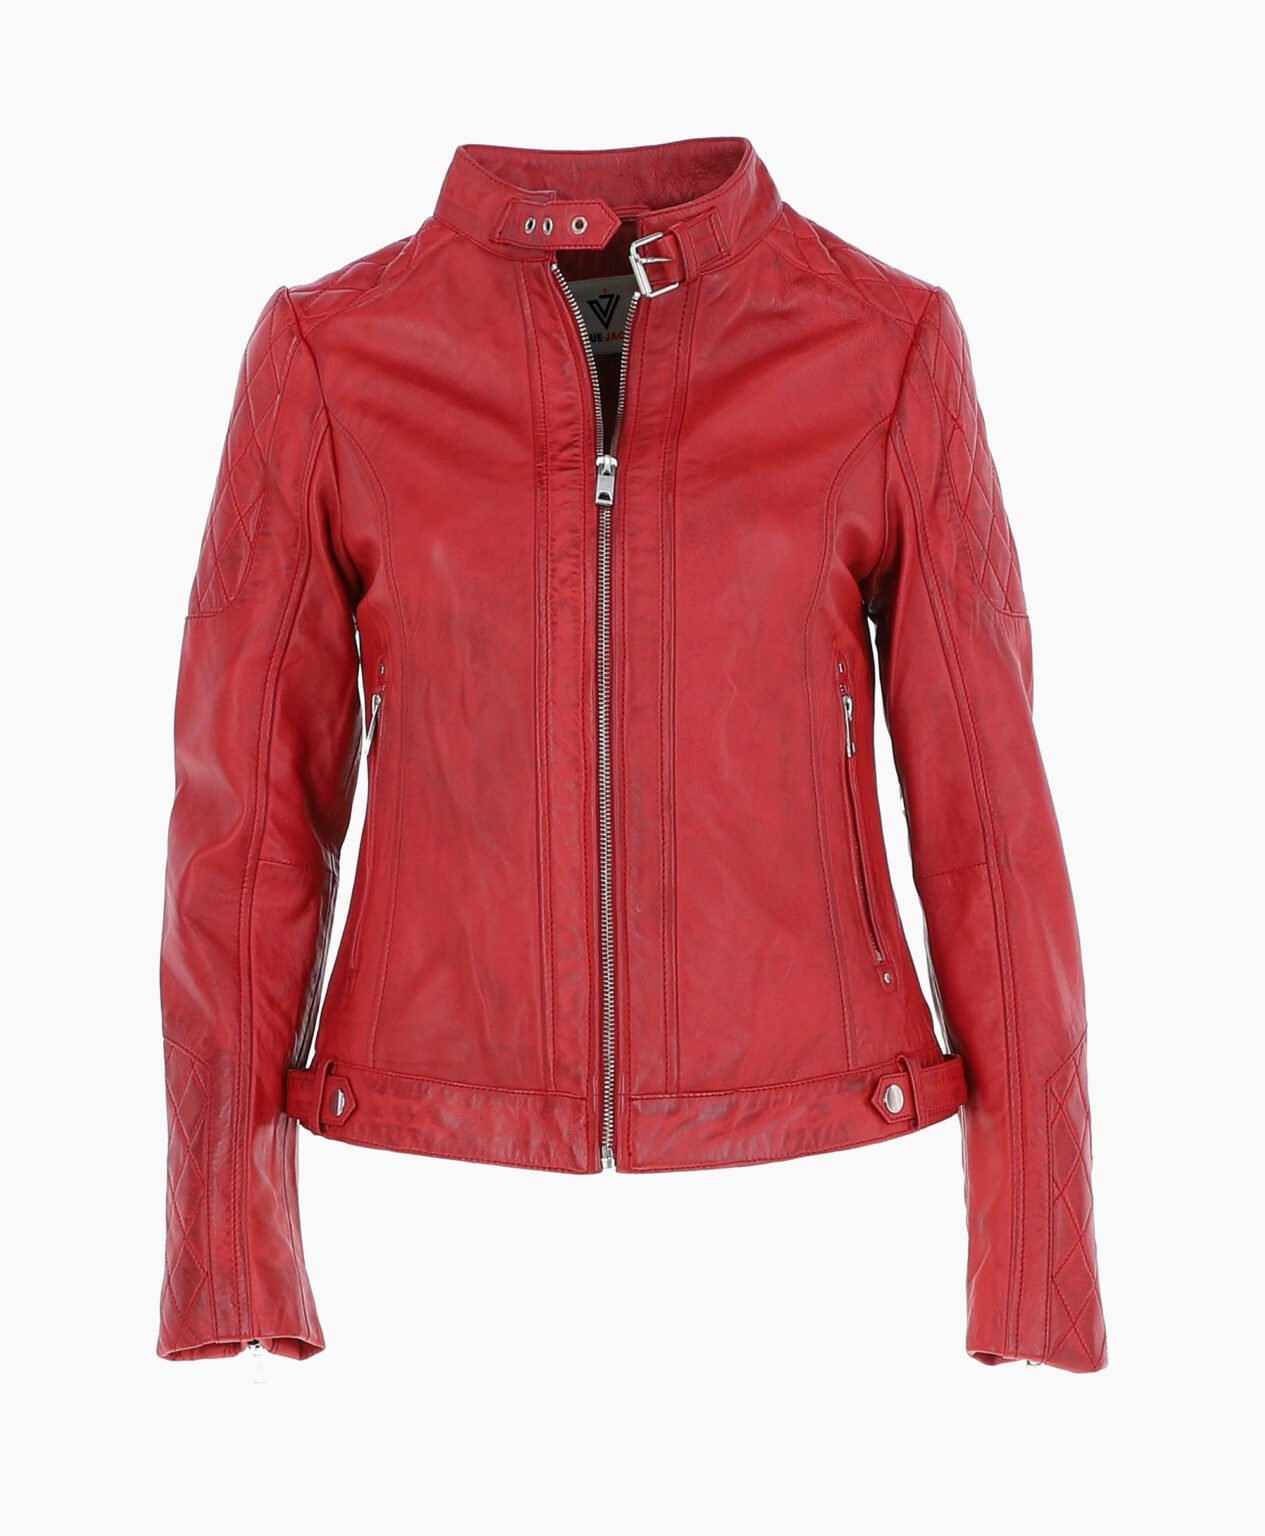 vogue-jacket-leather-jacket-red-malibu-image200